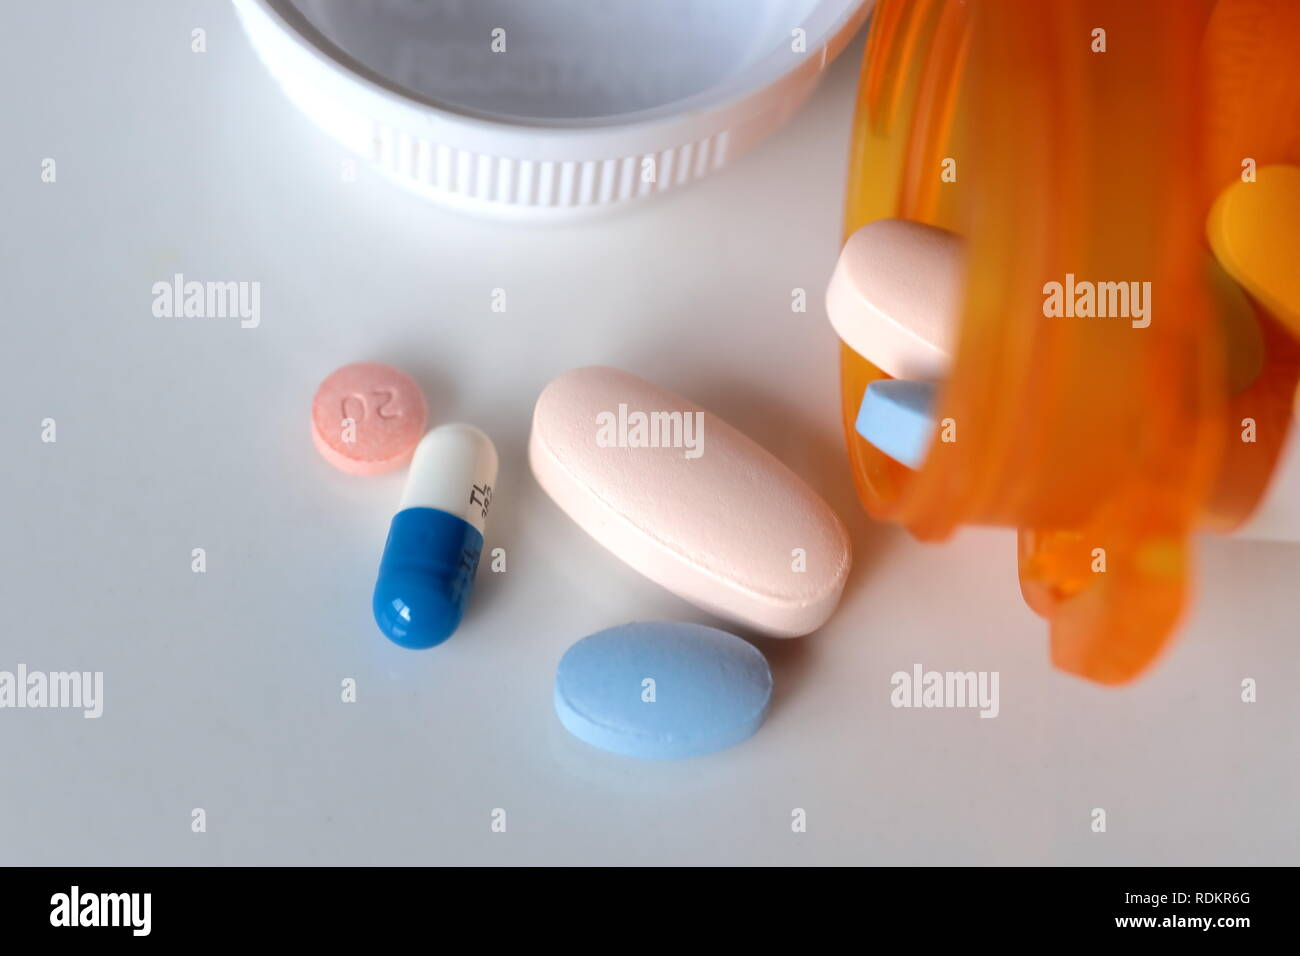 Medicine pills spill bottle white background Stock Photo